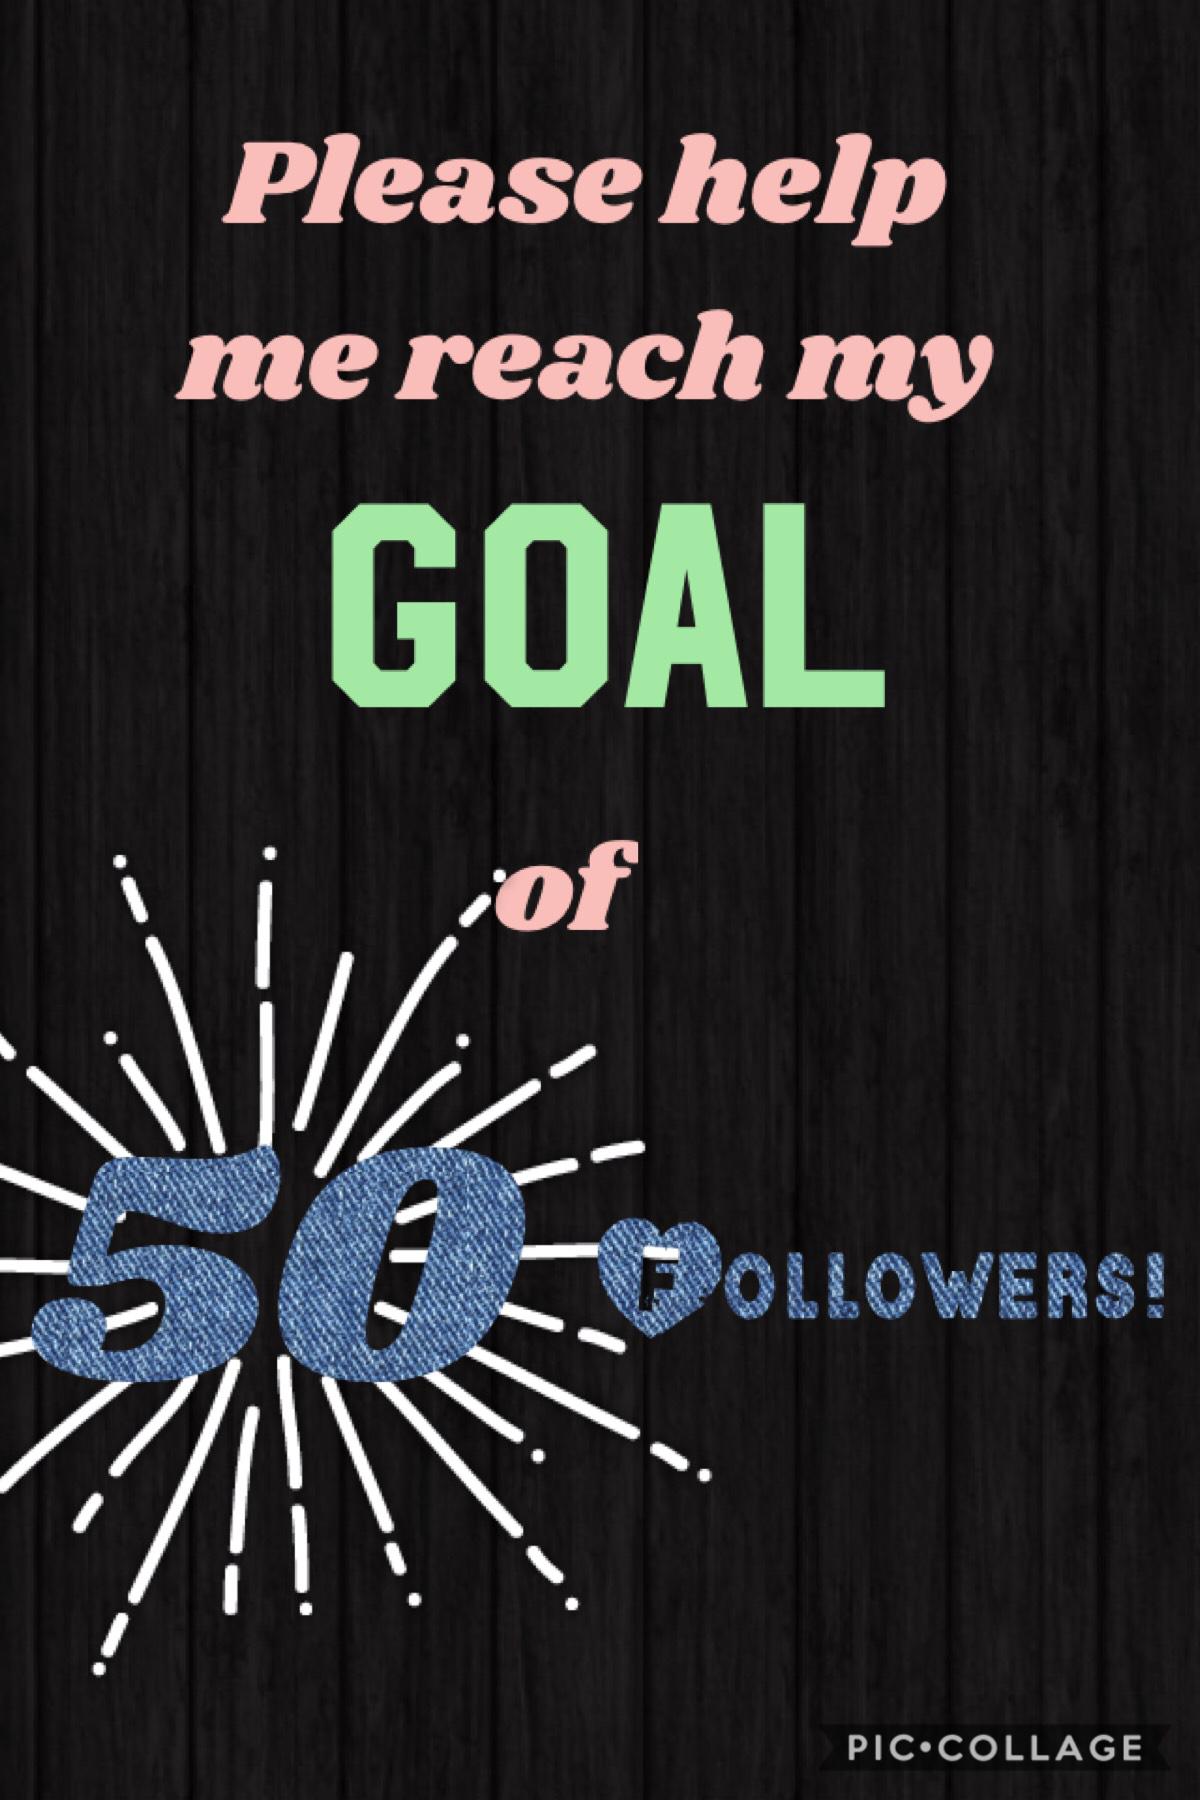 Plz help me reach my goal of 50 followers!!!🏅